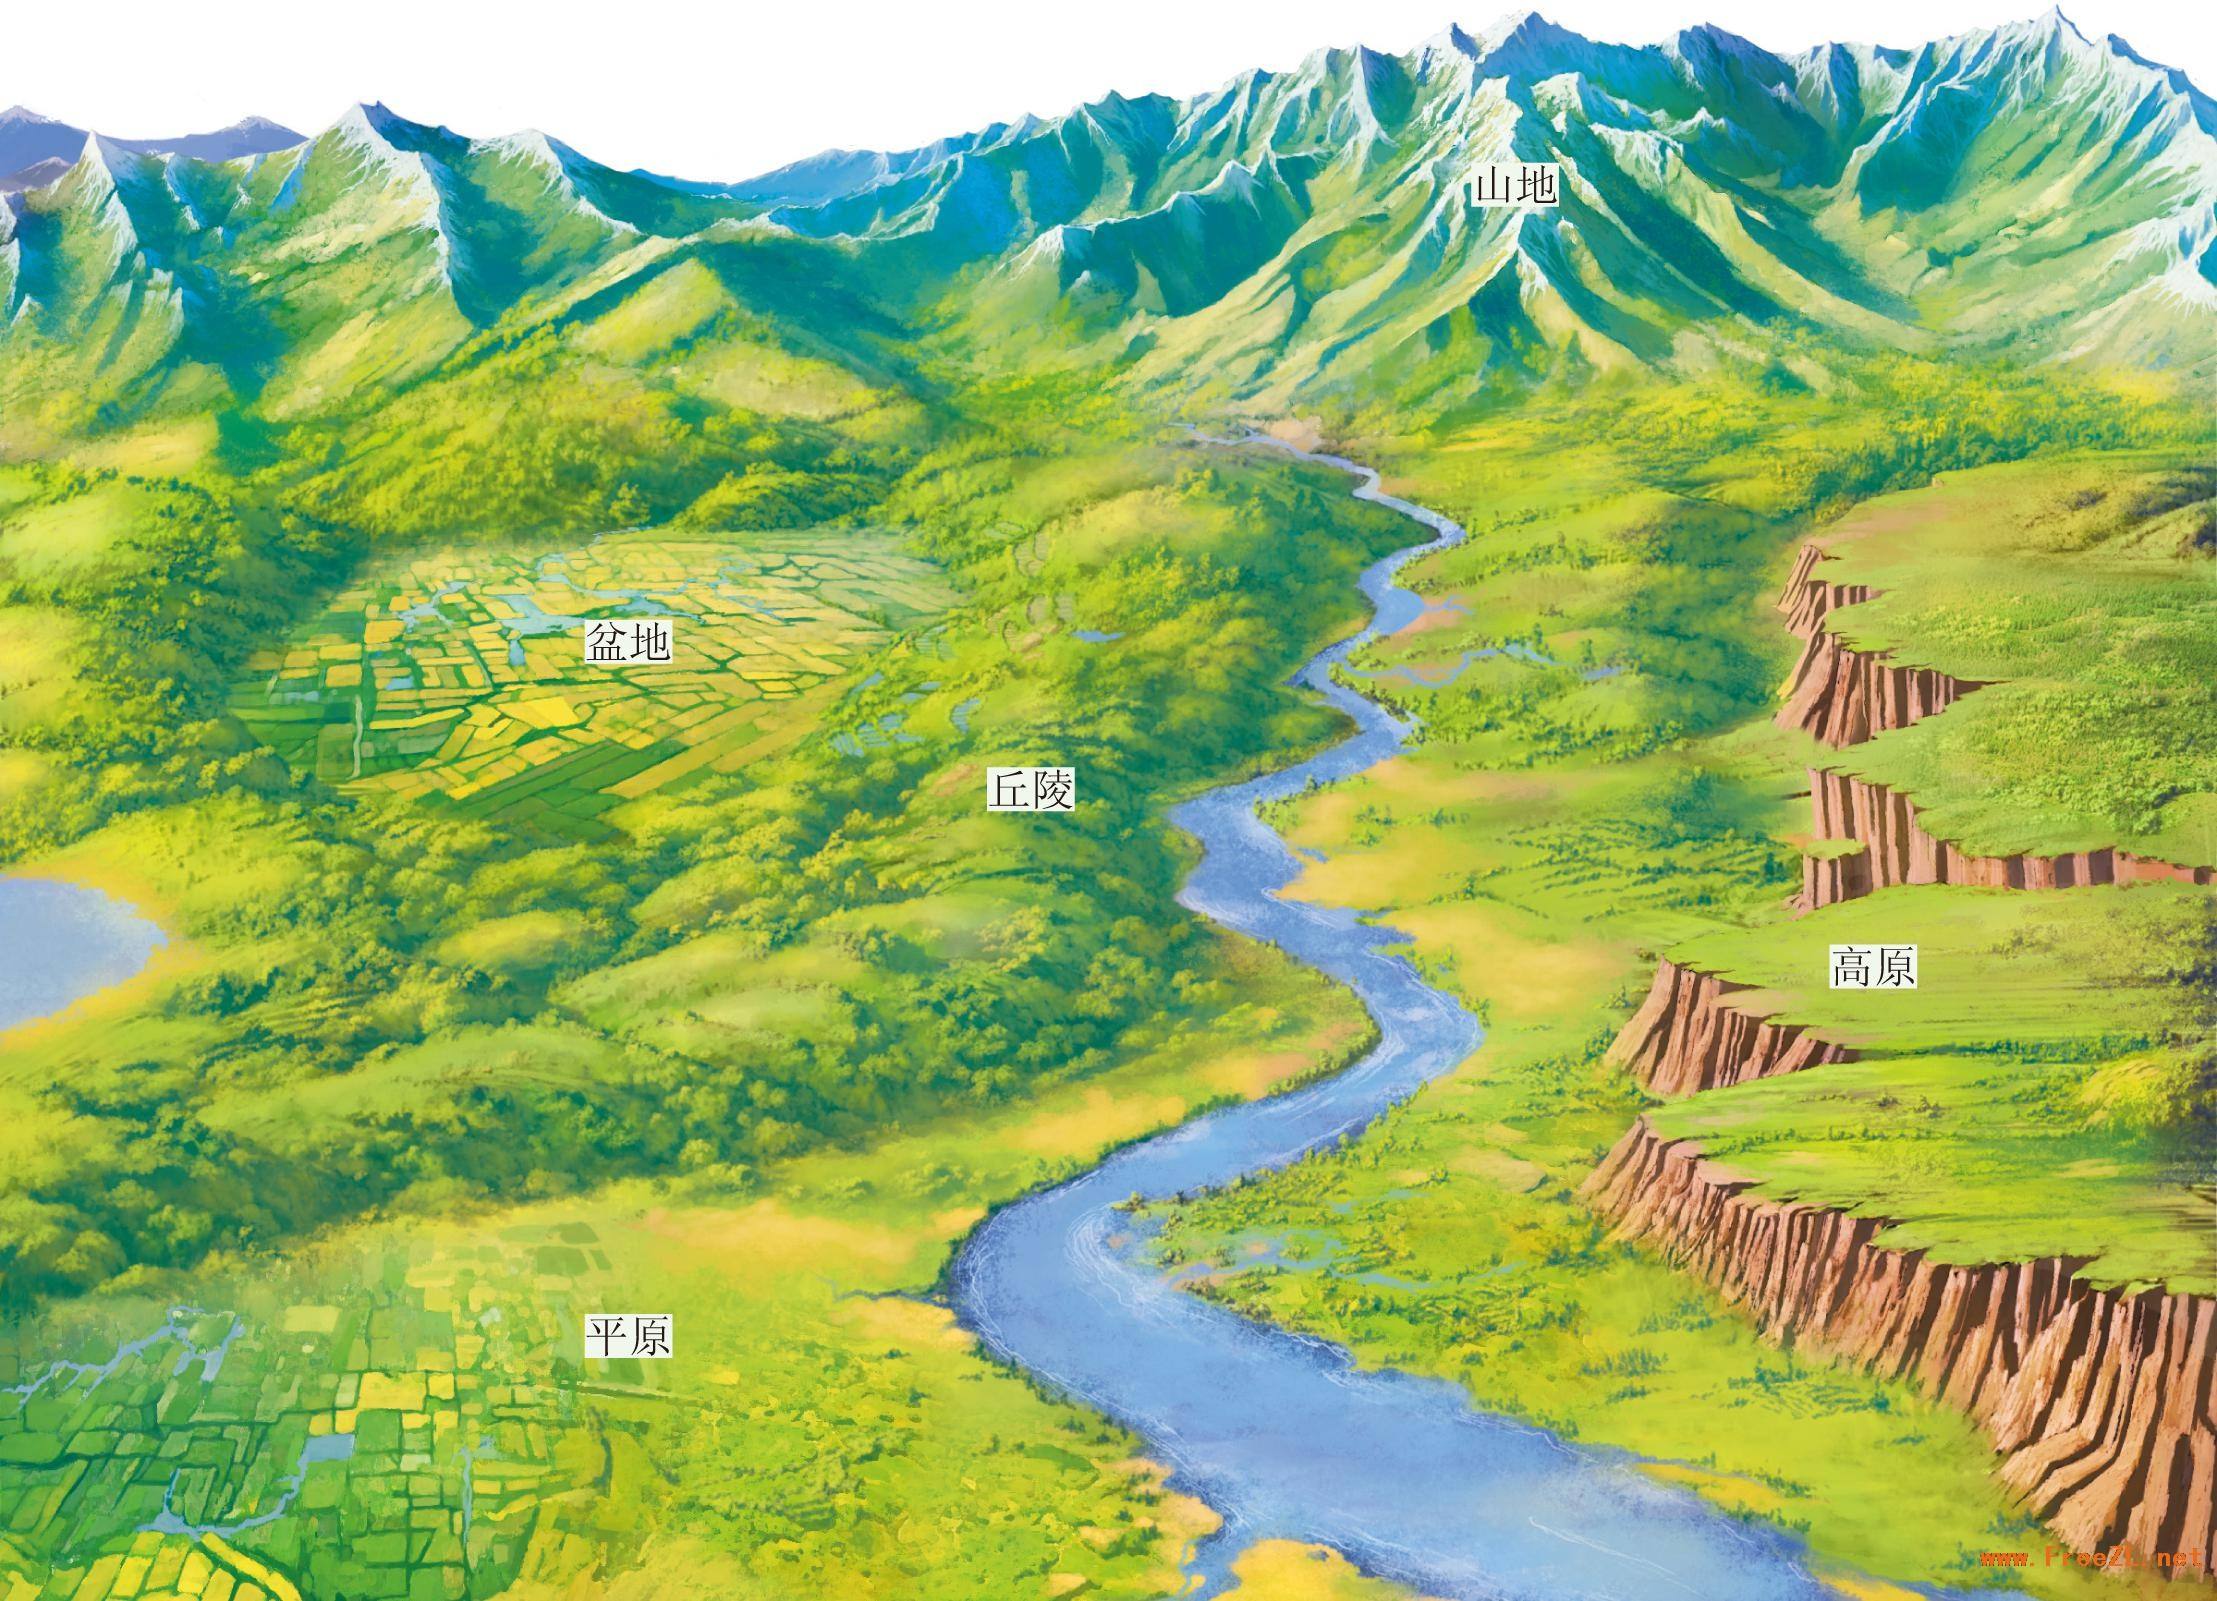 内蒙古地图全图高清版(2)|内蒙古地图全图高清版(2)全图高清版大图片|旅途风景图片网|www.visacits.com